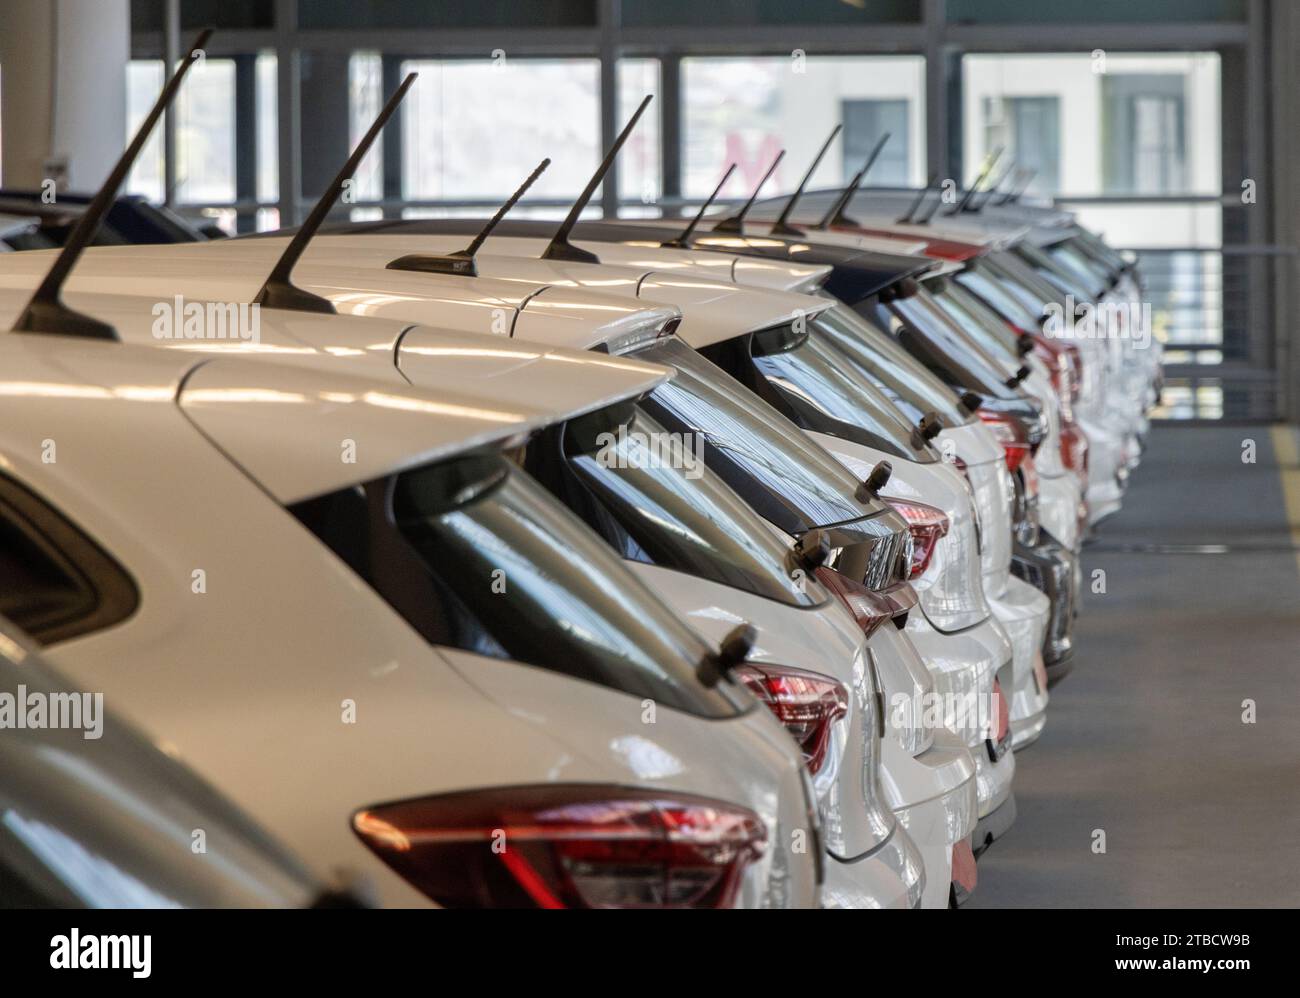 Ventes de voitures d'occasion voitures dans une rangée de voitures Inventaire concessionnaire garage intérieur Banque D'Images